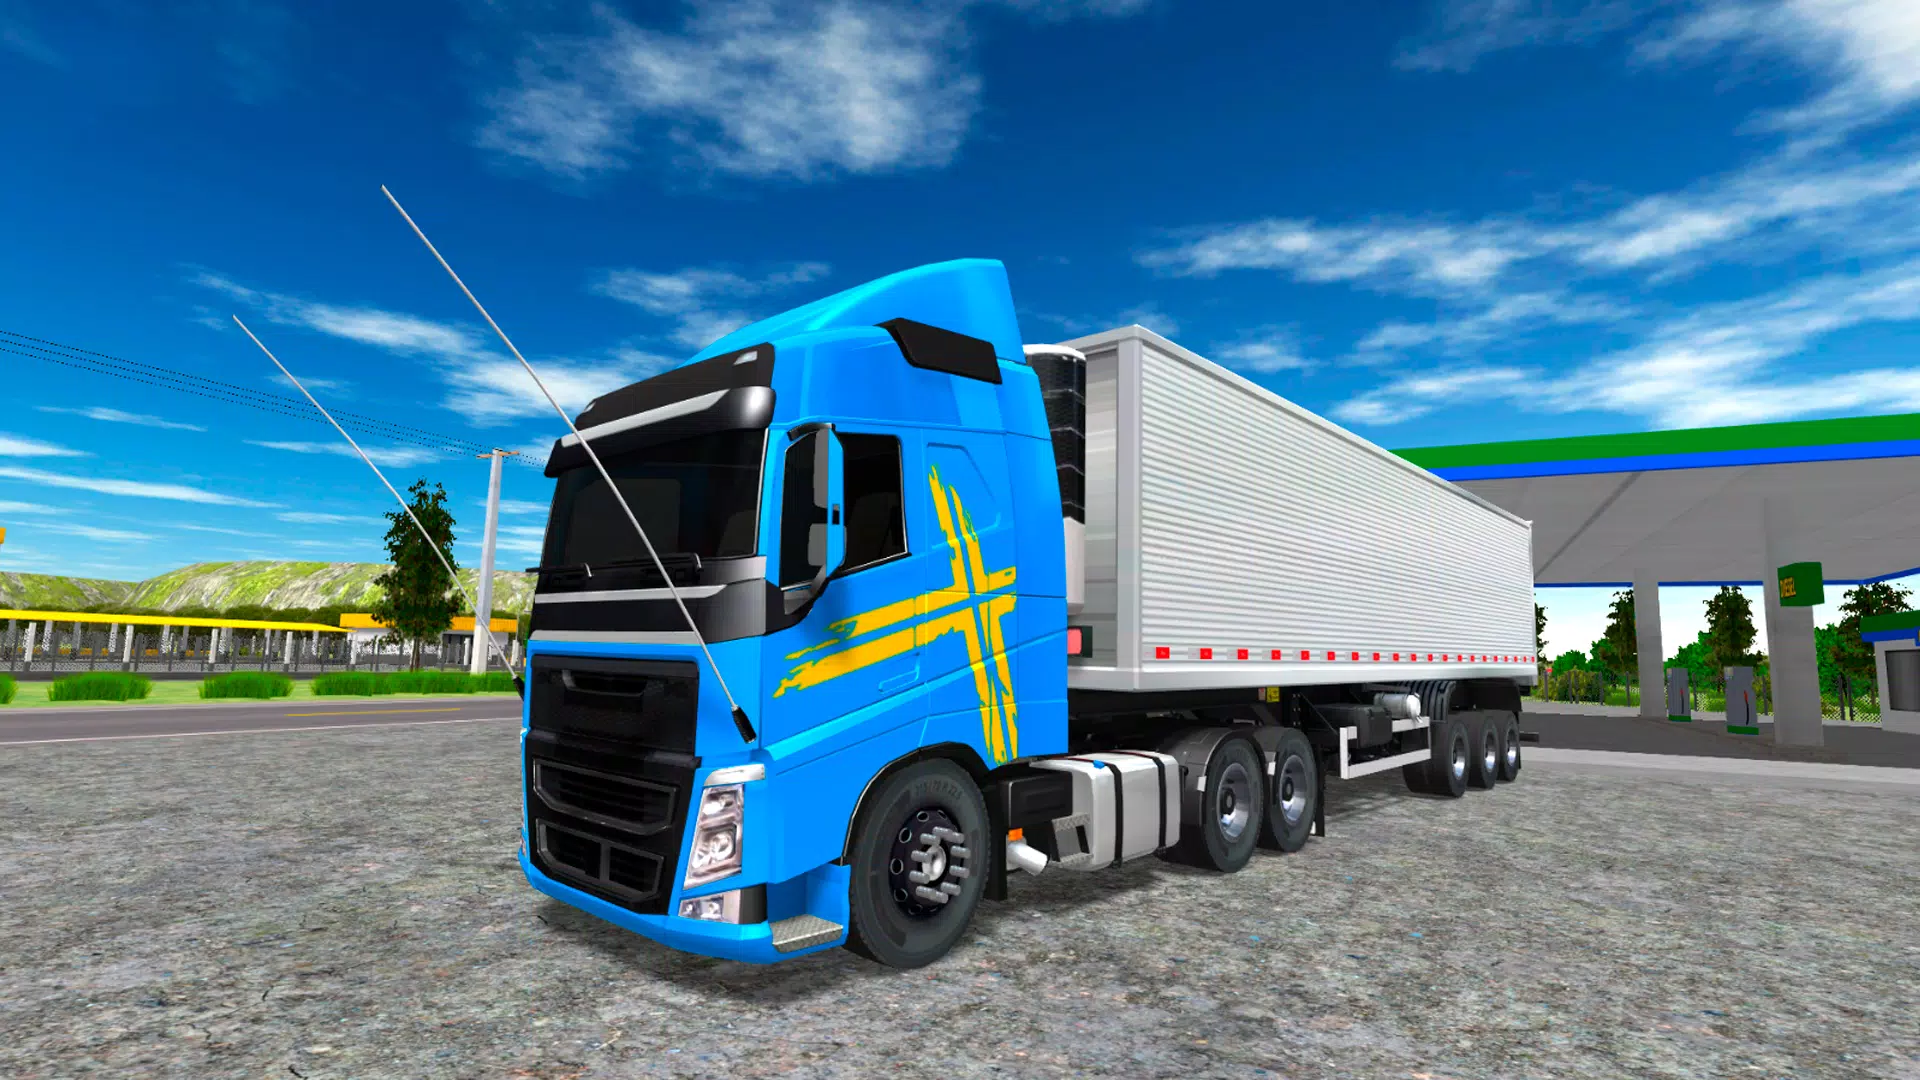 SAIU!! APK DINHEIRO INFINITO - World Truck Simulator V1.160